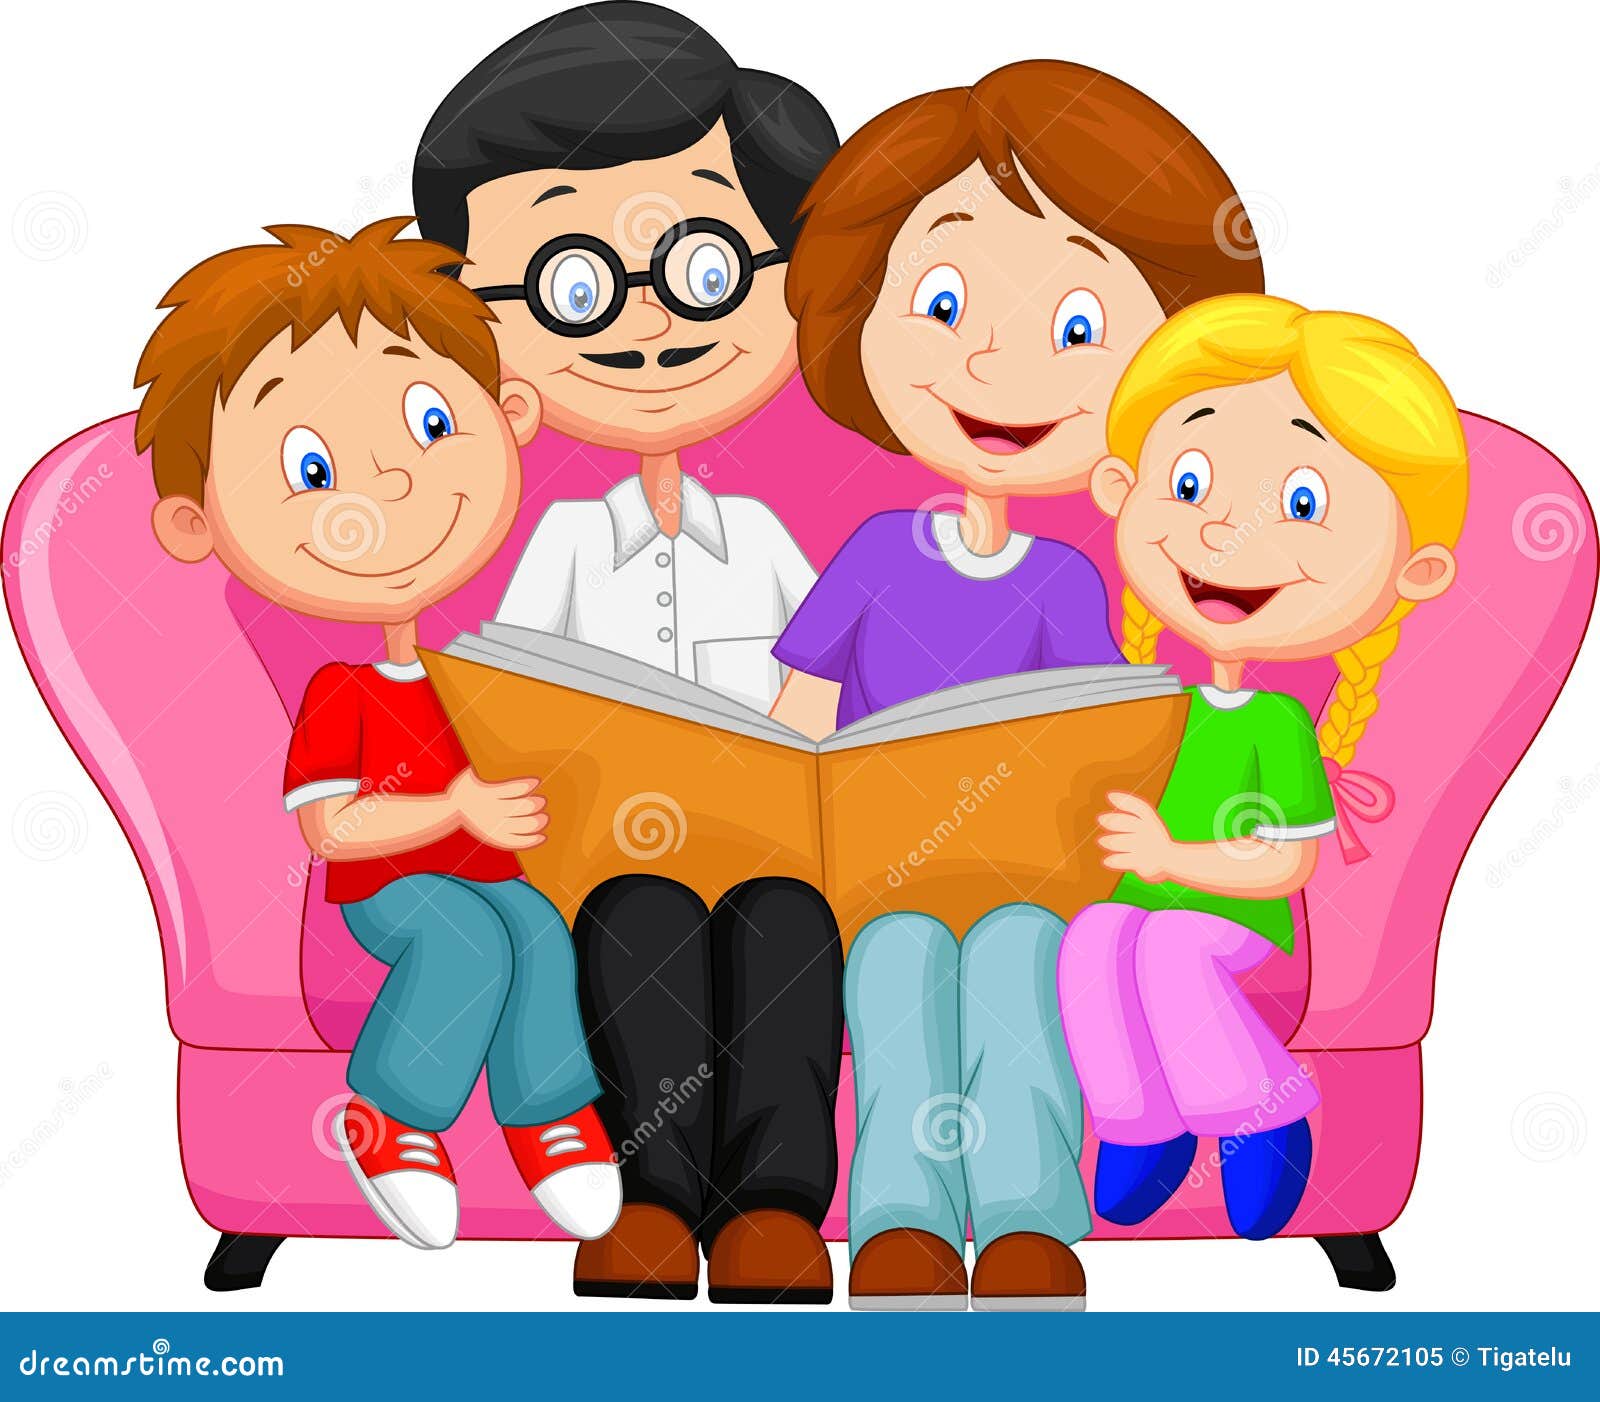 family reading clipart - photo #5